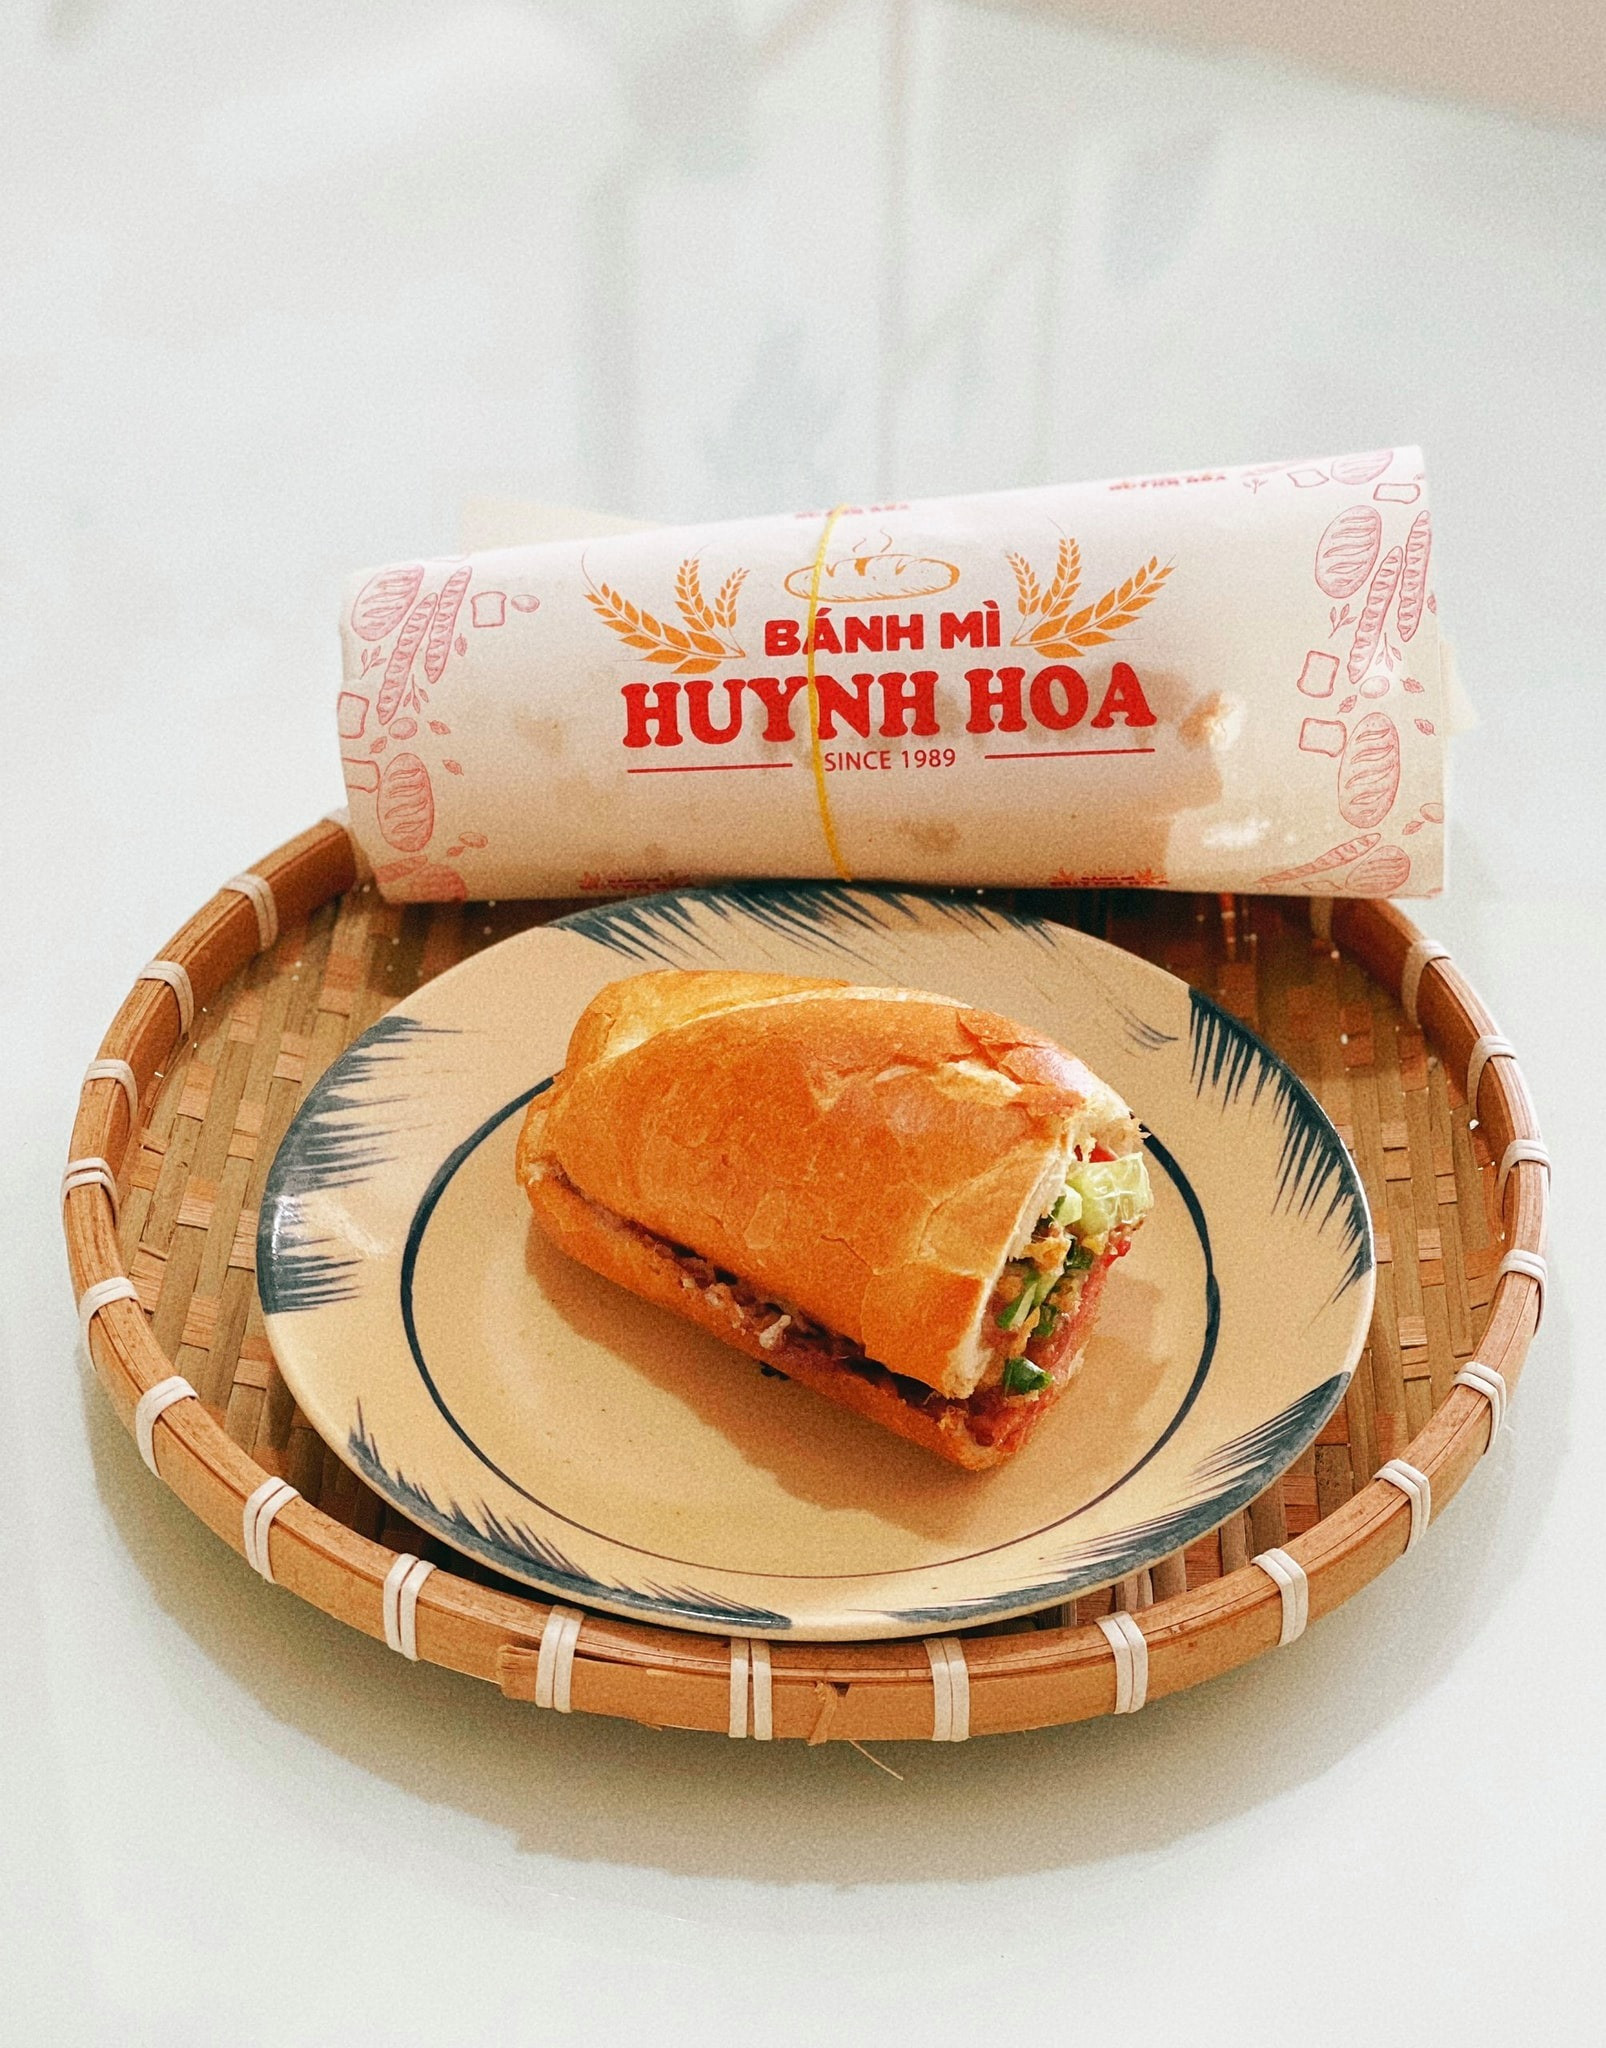 Bánh mì nổi tiếng Sài Gòn ship máy bay ra Hà Nội, giá 100 ngàn/ ổ thực khách vẫn mê - 3